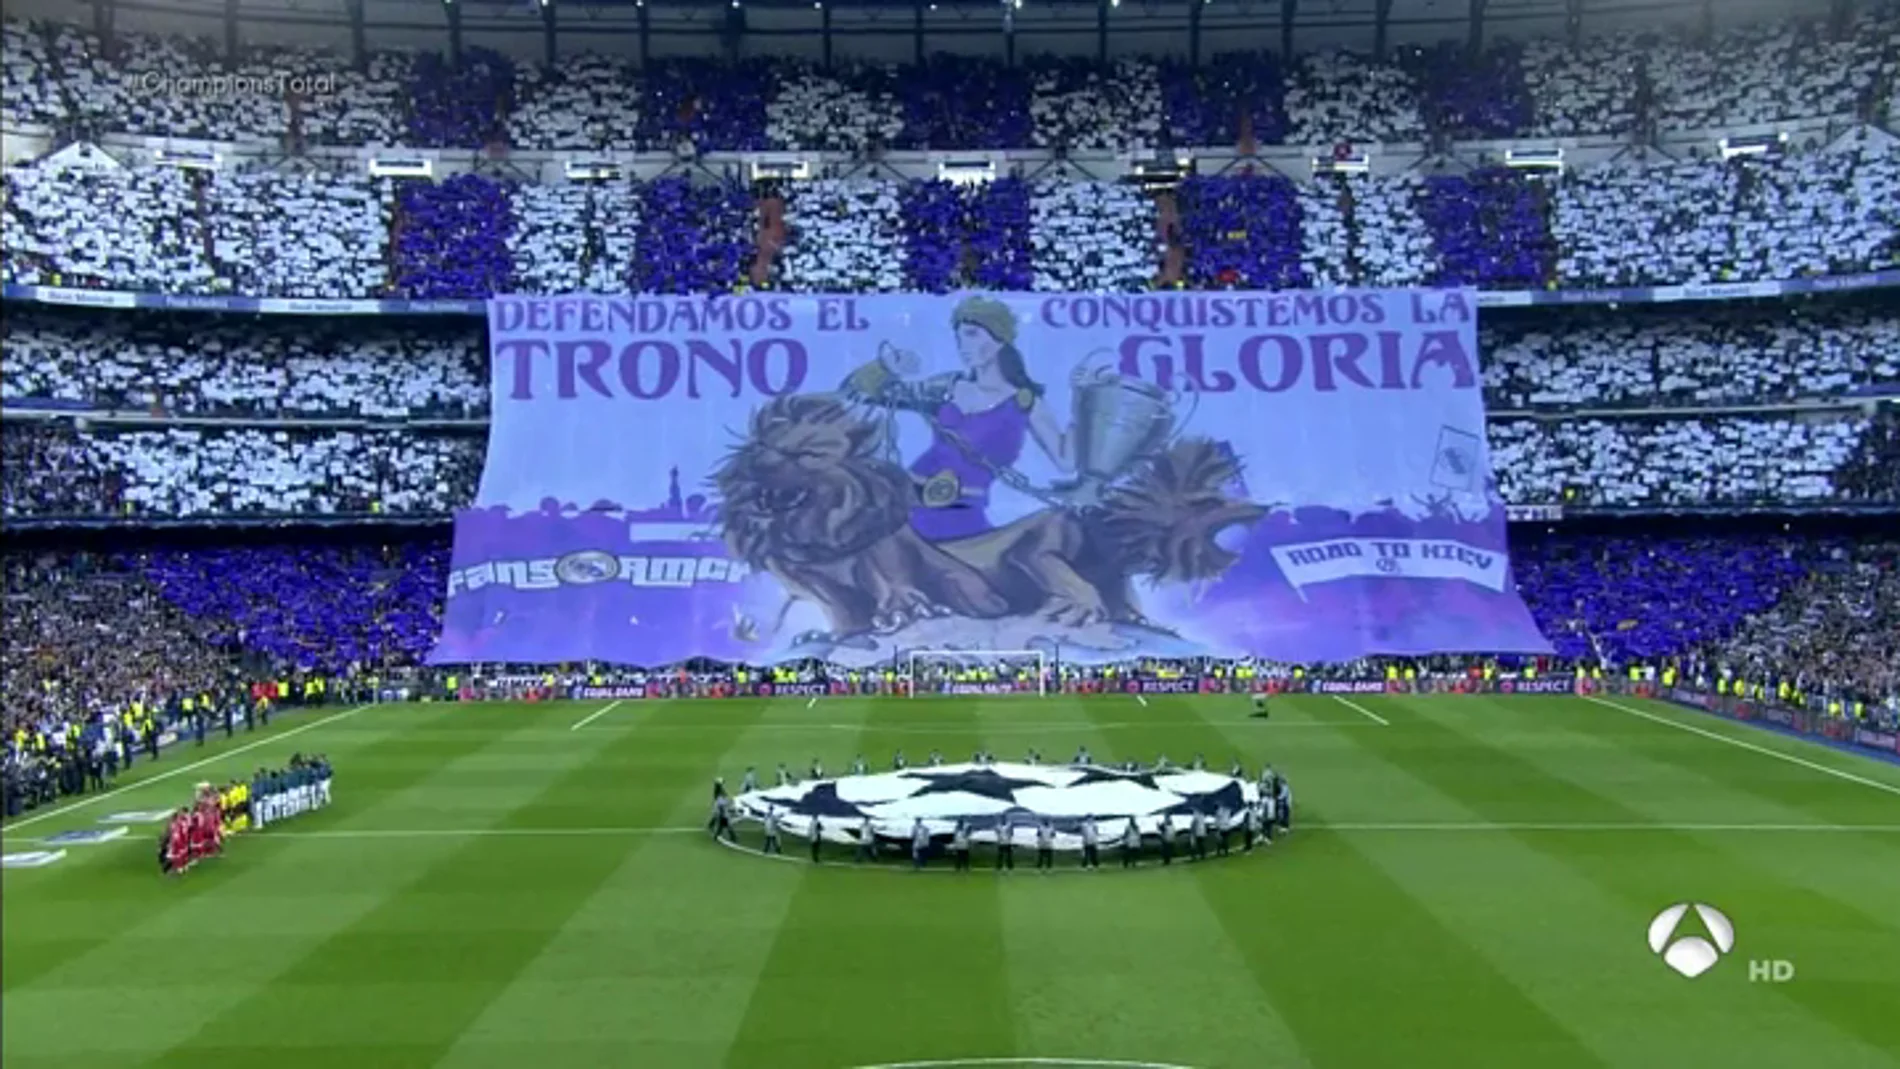 "Defendamos el trono, conquistemos la gloria": el espectacular mosaico del Bernabéu para el Madrid-Bayern